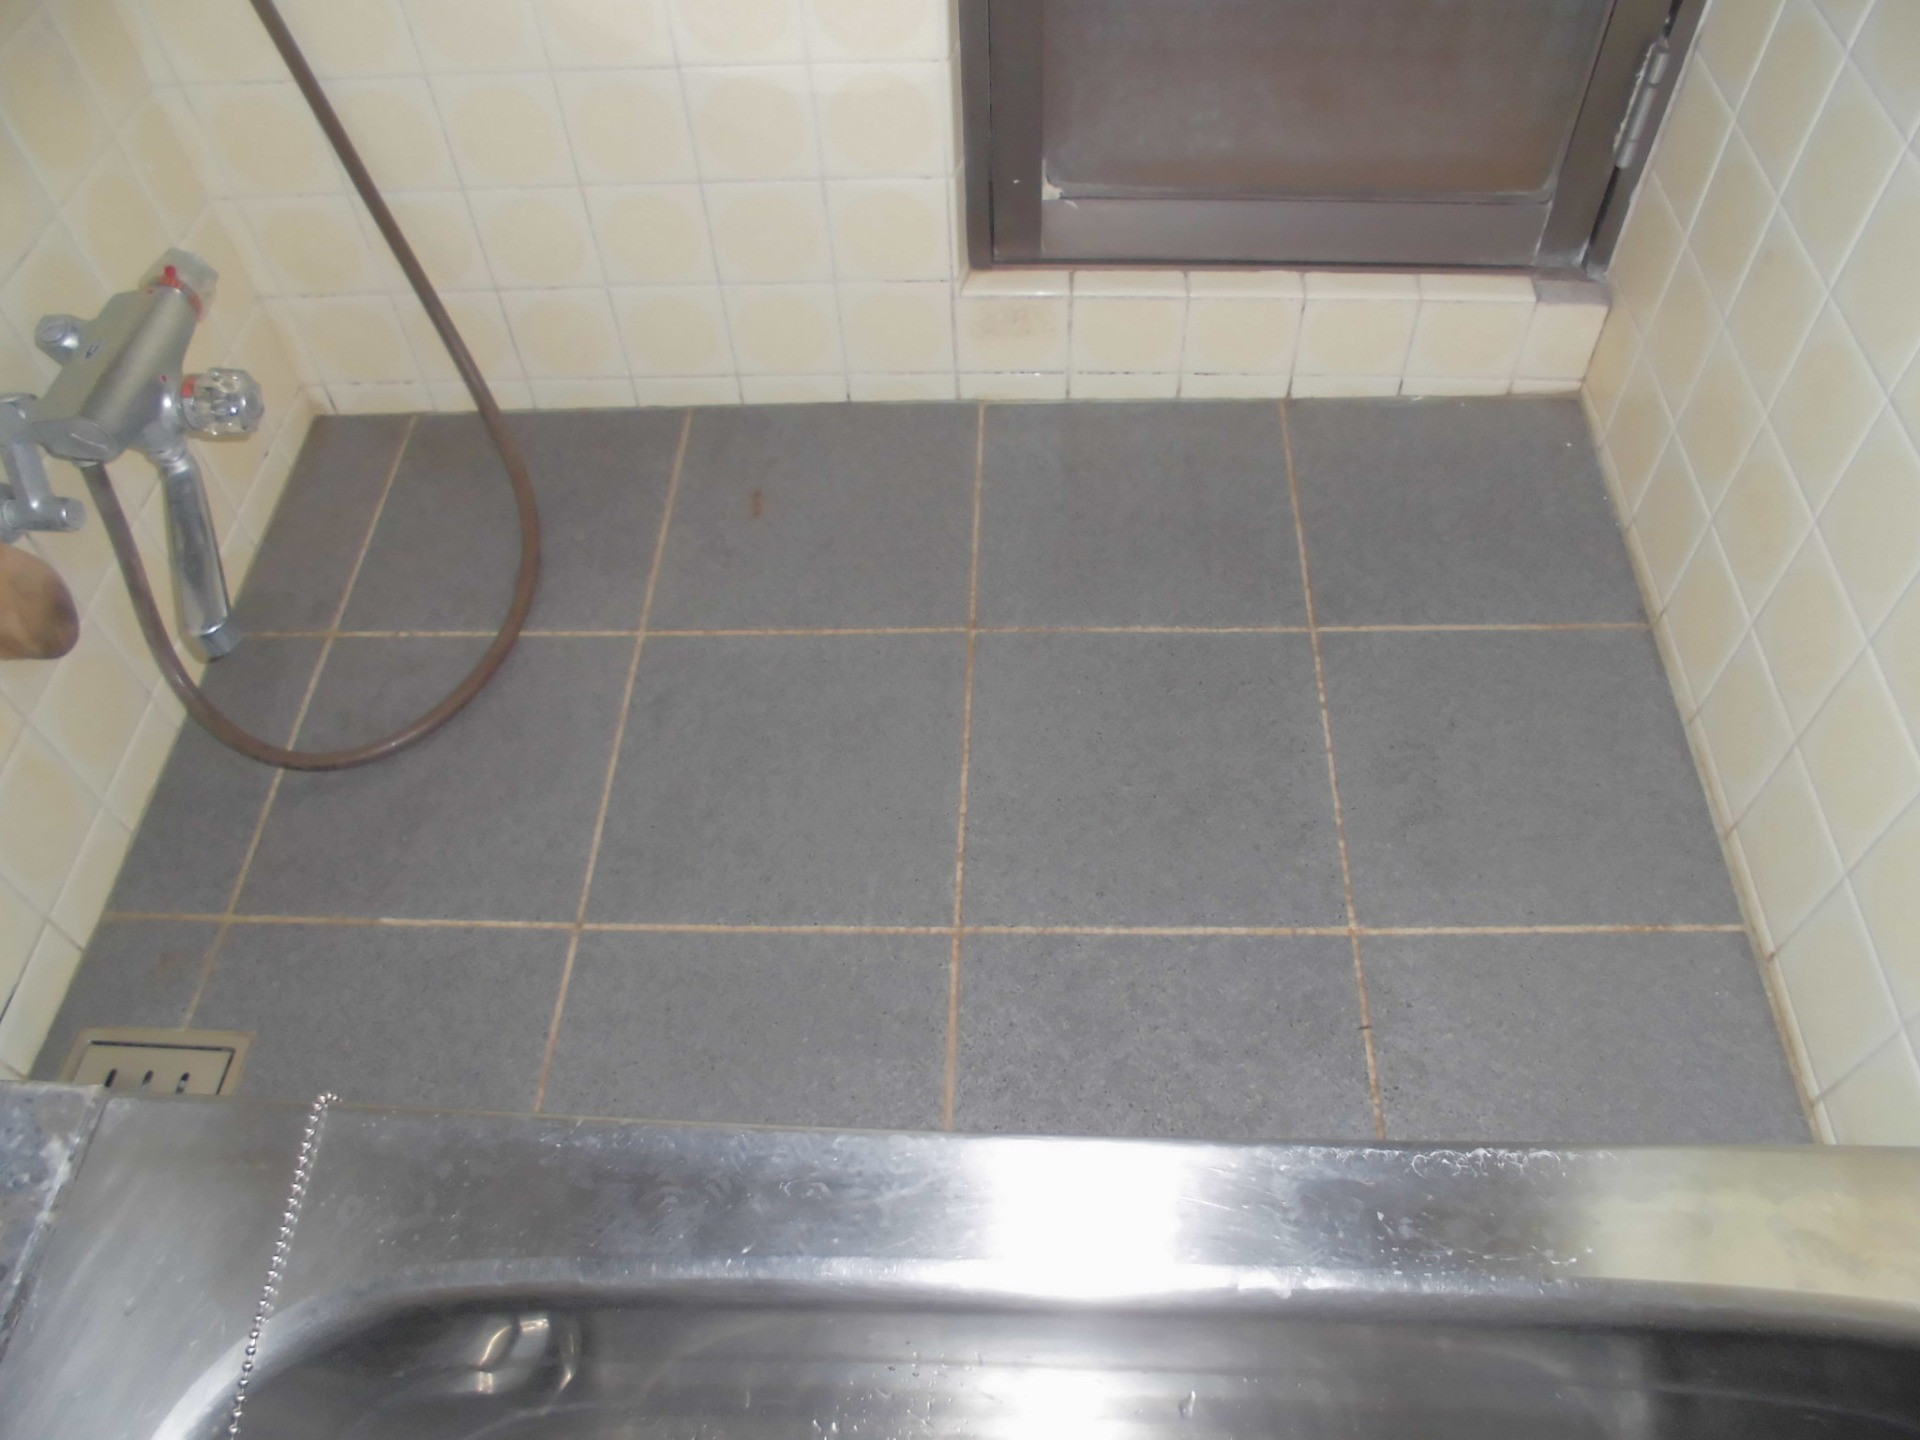 住宅改修 浴室床材の滑りにくいものへの変更 世田谷区 リフォーム 世田谷区のリフォーム会社はブログを開設しておりますのでご覧ください